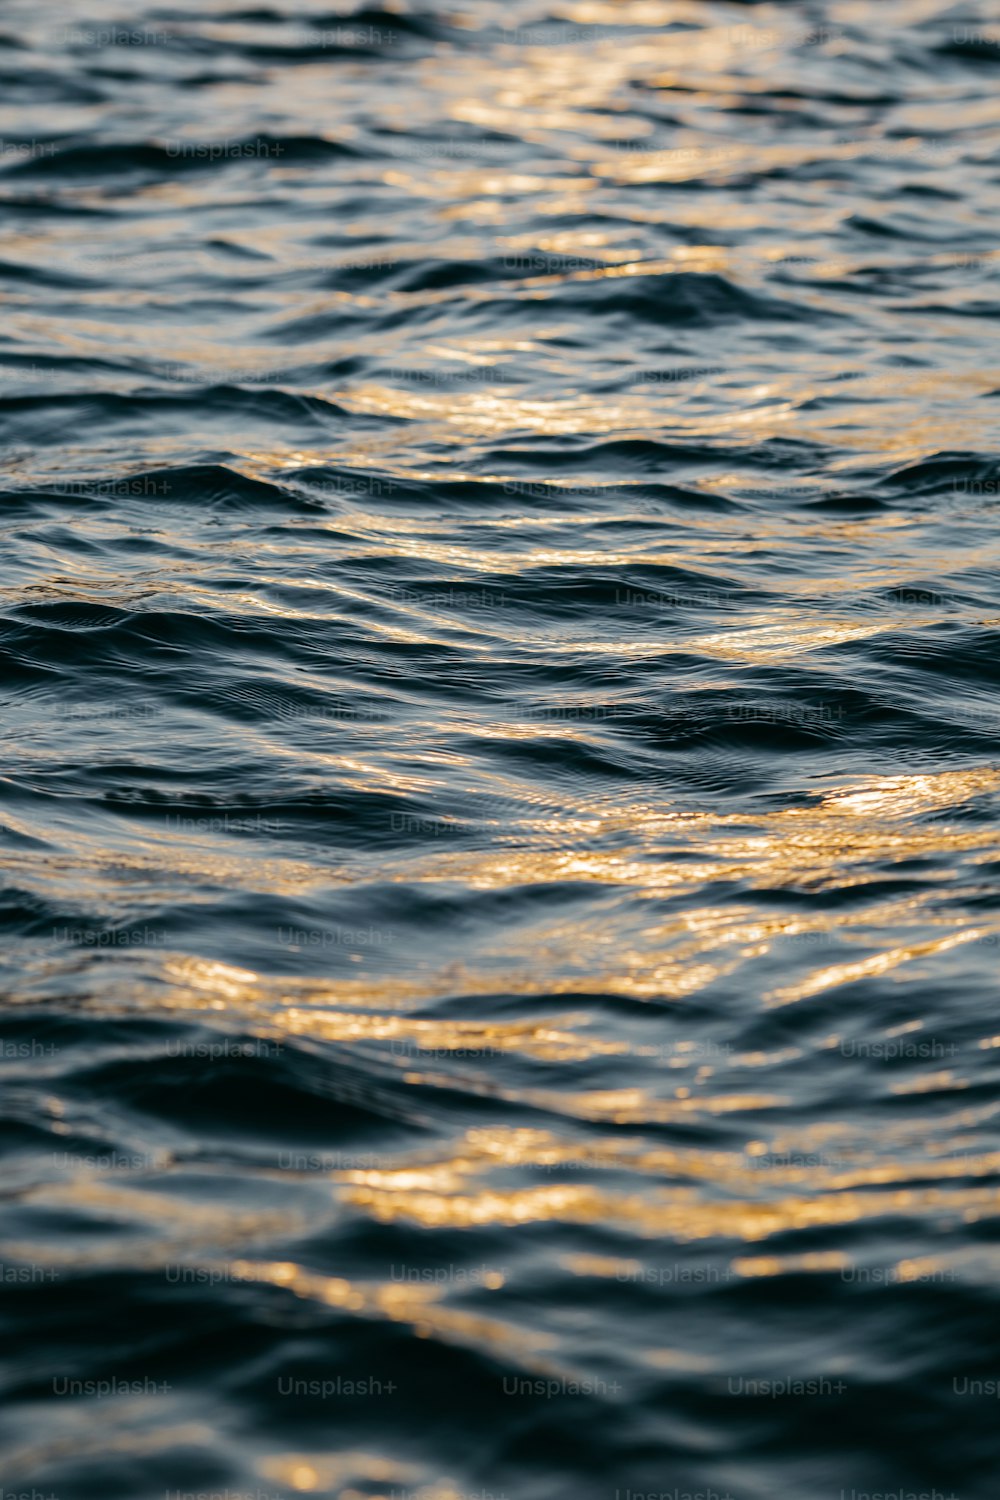 Un primer plano de un cuerpo de agua con olas